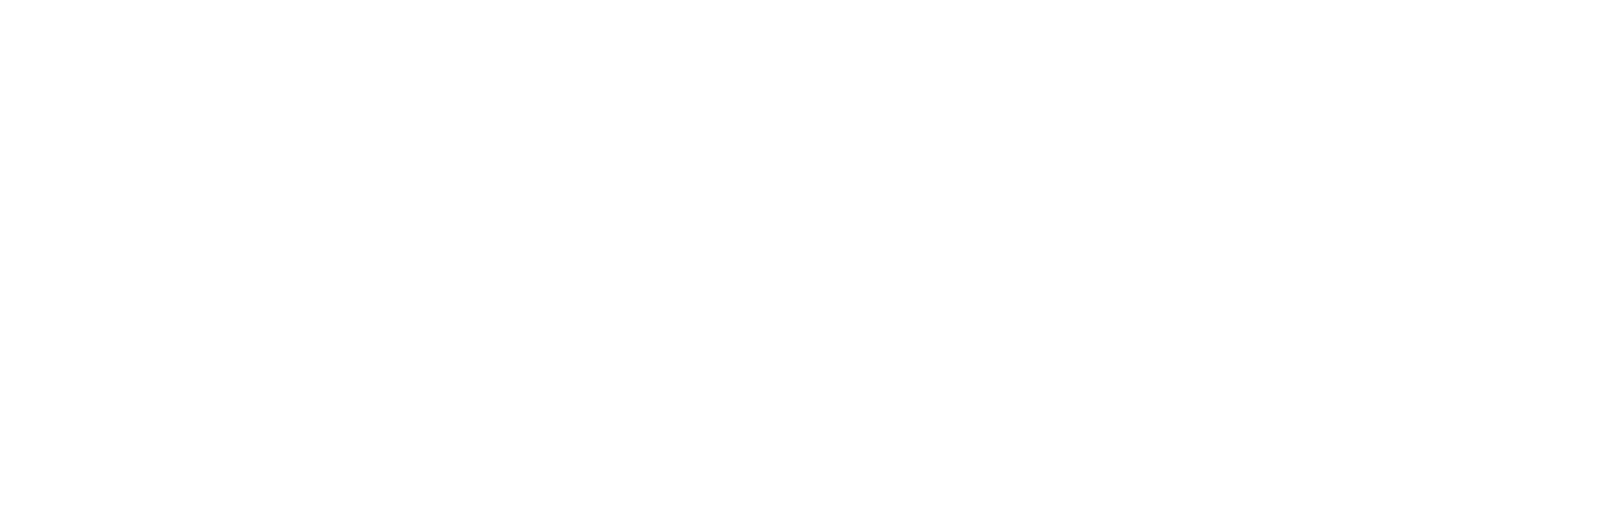 Enterprise Products logo large for dark backgrounds (transparent PNG)